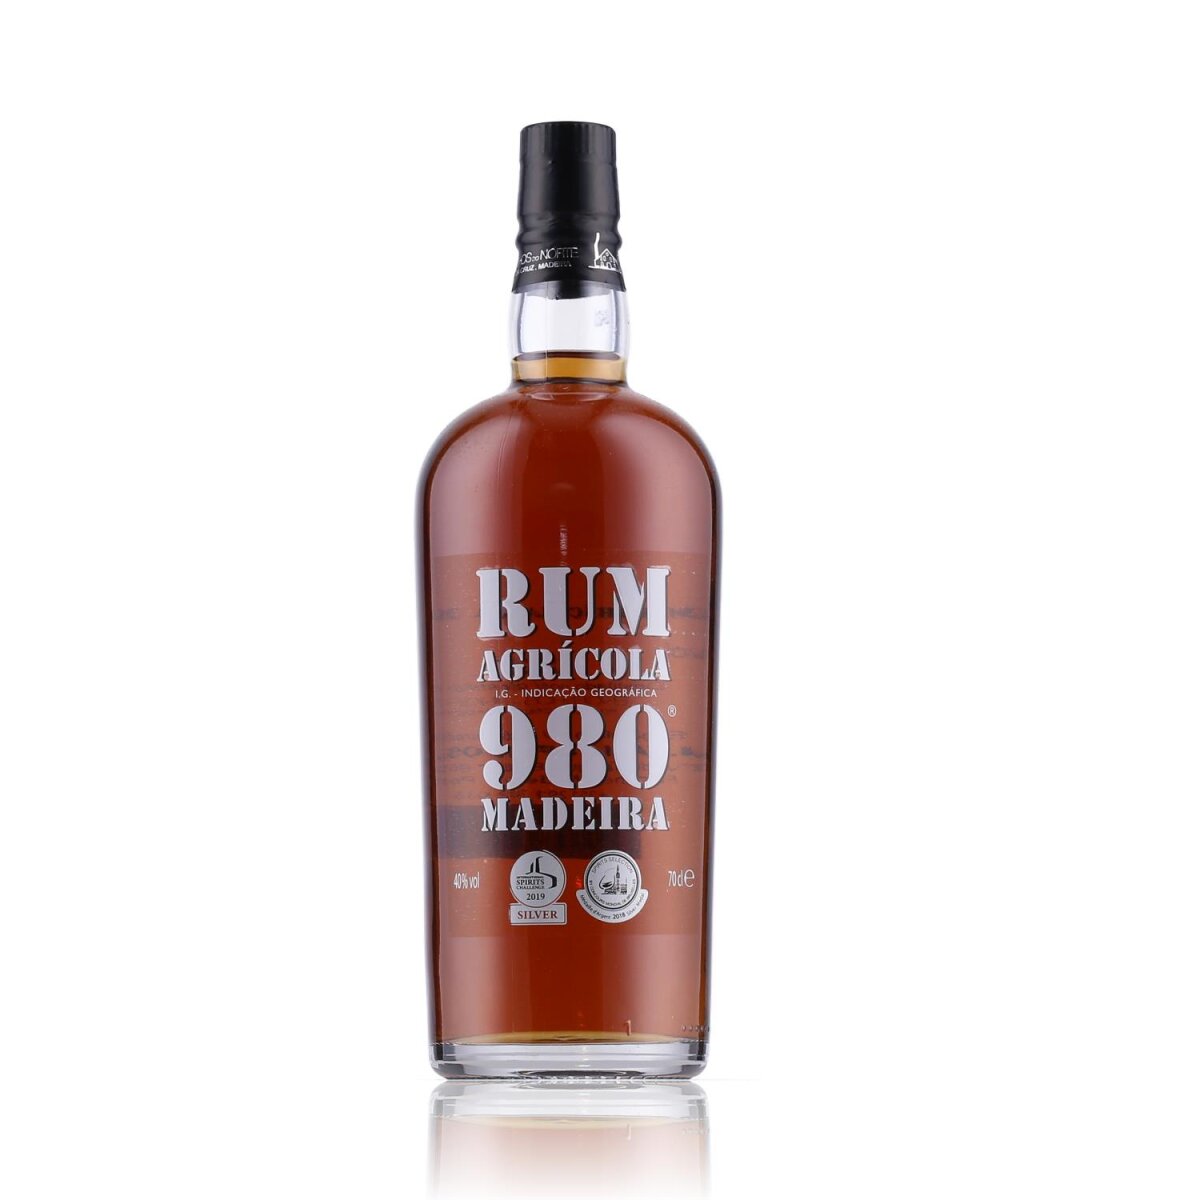 Rum Agricola 980 57,99 40% € Madeira Vol. 0,7l